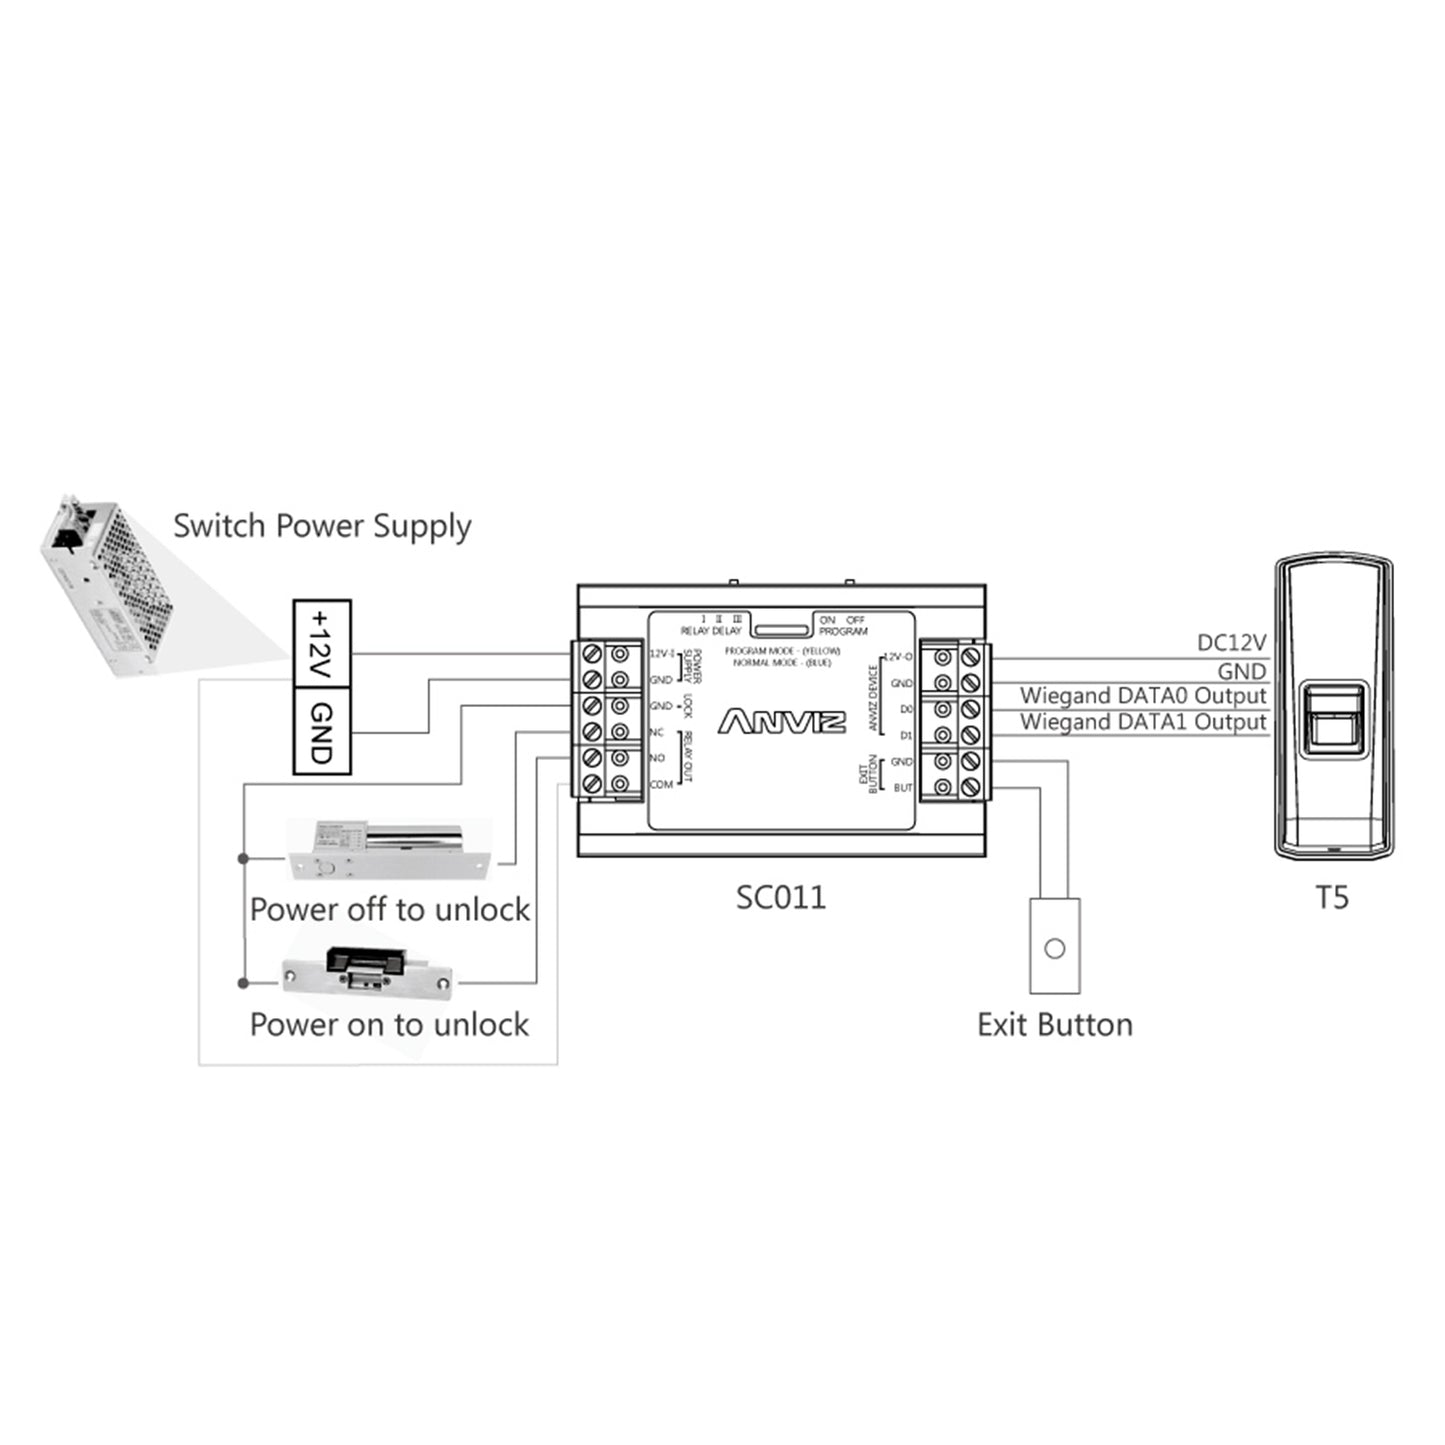 Controller indipendente ANVIZ - per installazioni automatiche - Entrata ANVIZ Wiegand e pulsante - Uscita relay NO/NC - controllo diretto della serratura - Alimentazione DC 12 V